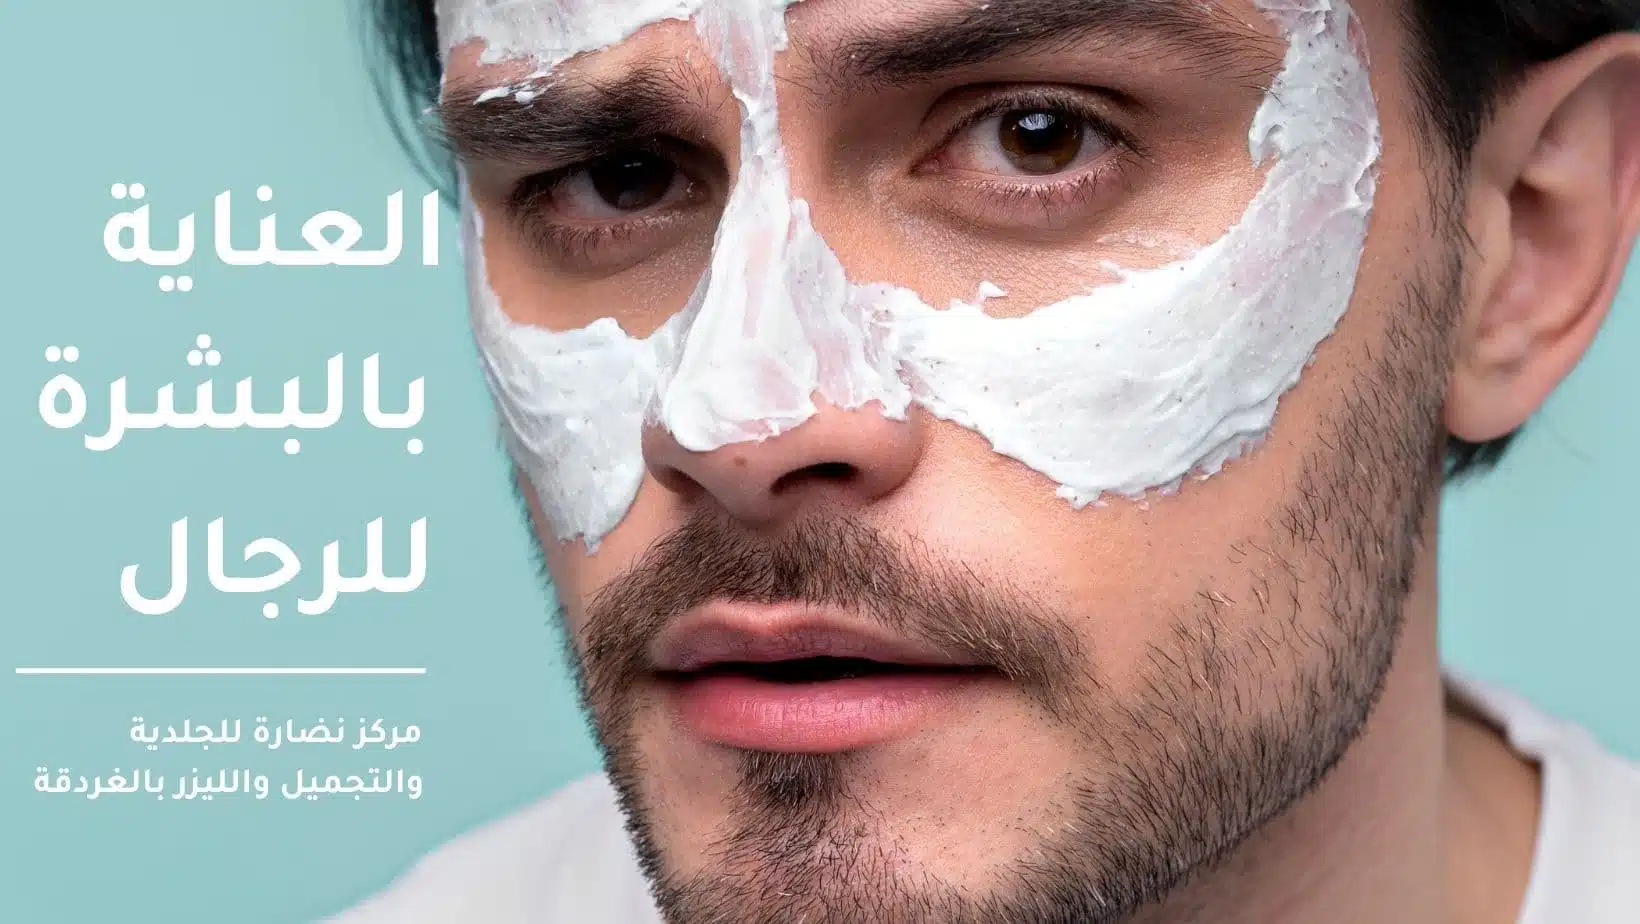 Men's skin care